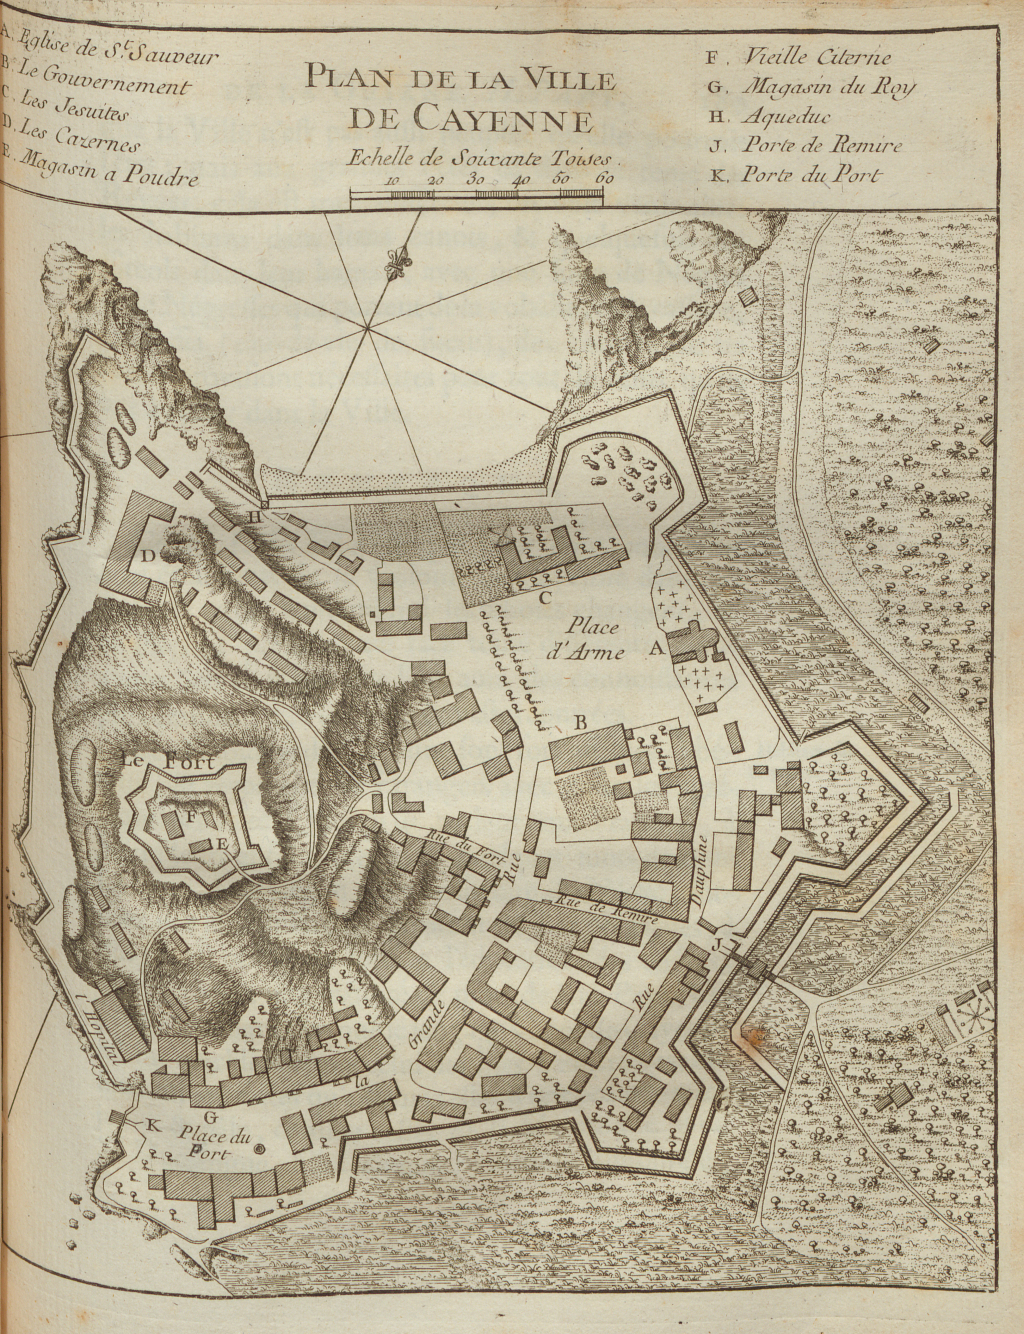 “Plan de la Ville de Cayenne,” from Description géographique de la Guyane by Jacques Nicolas Bellin, 1763. In 1760, Cayenne was a town of about 150 wooden dwellings and a fort.